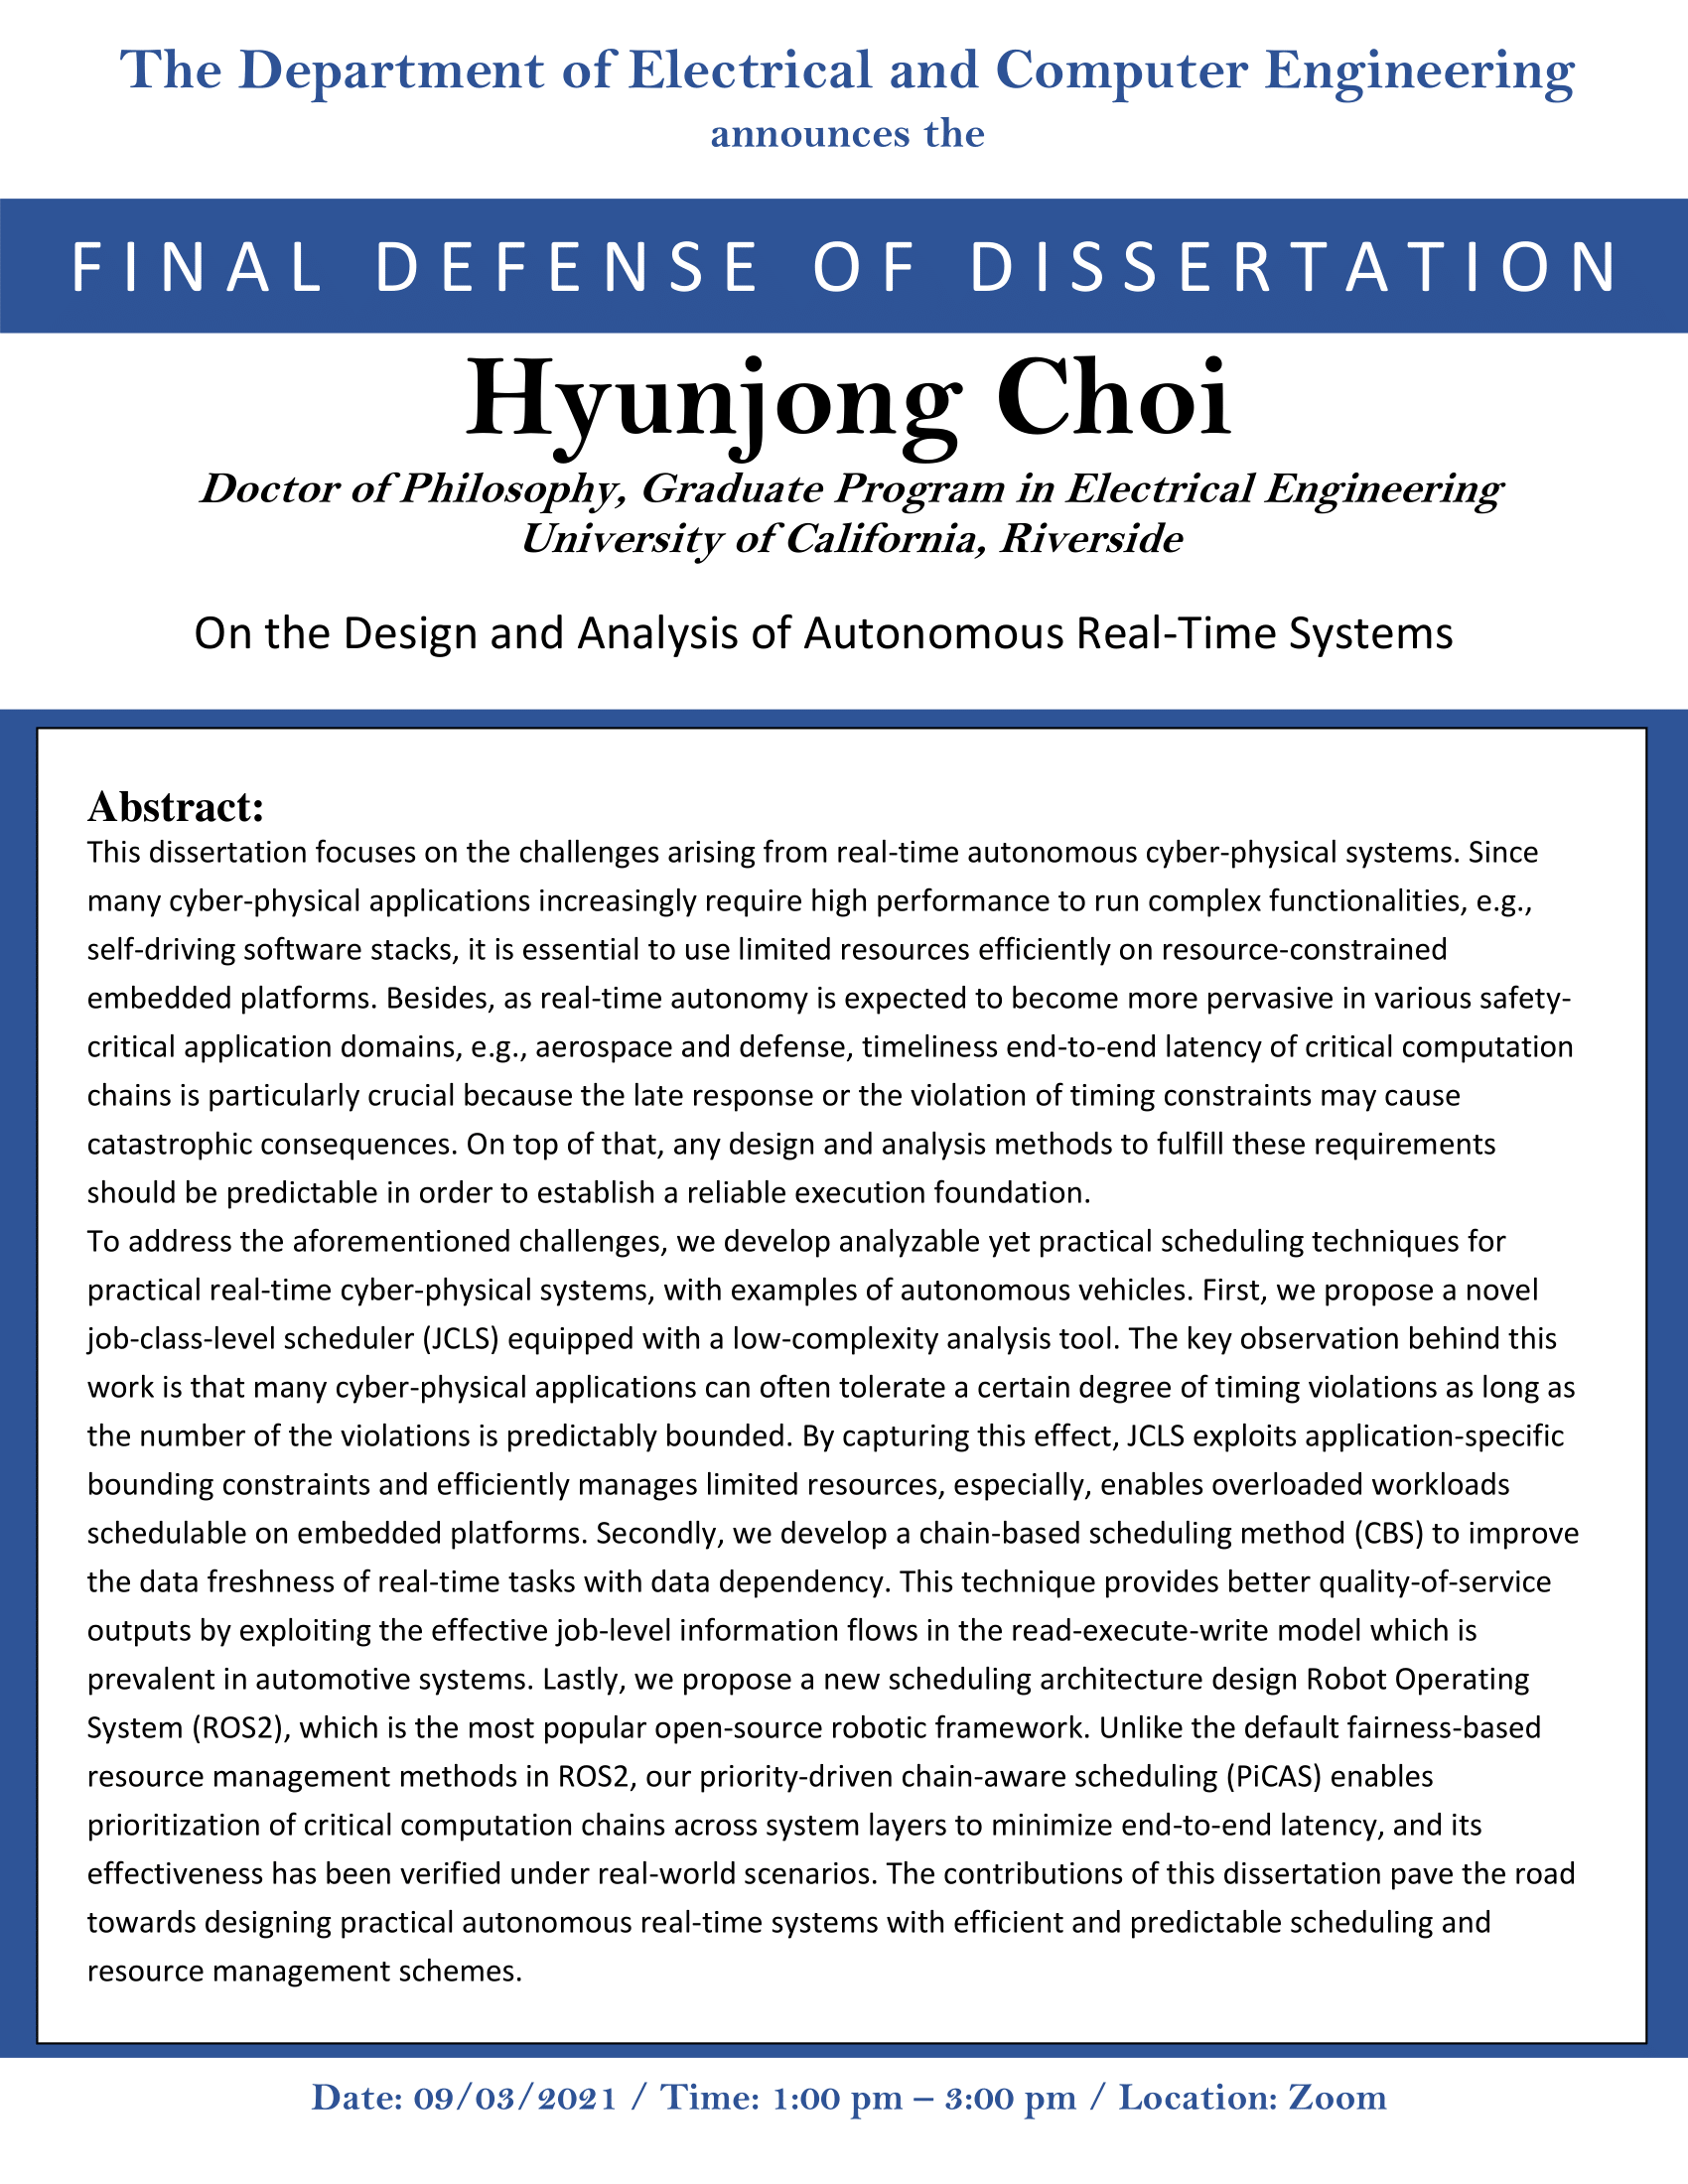 CHOI, Hyunjong PhD Dissertation Flyer UPDATED